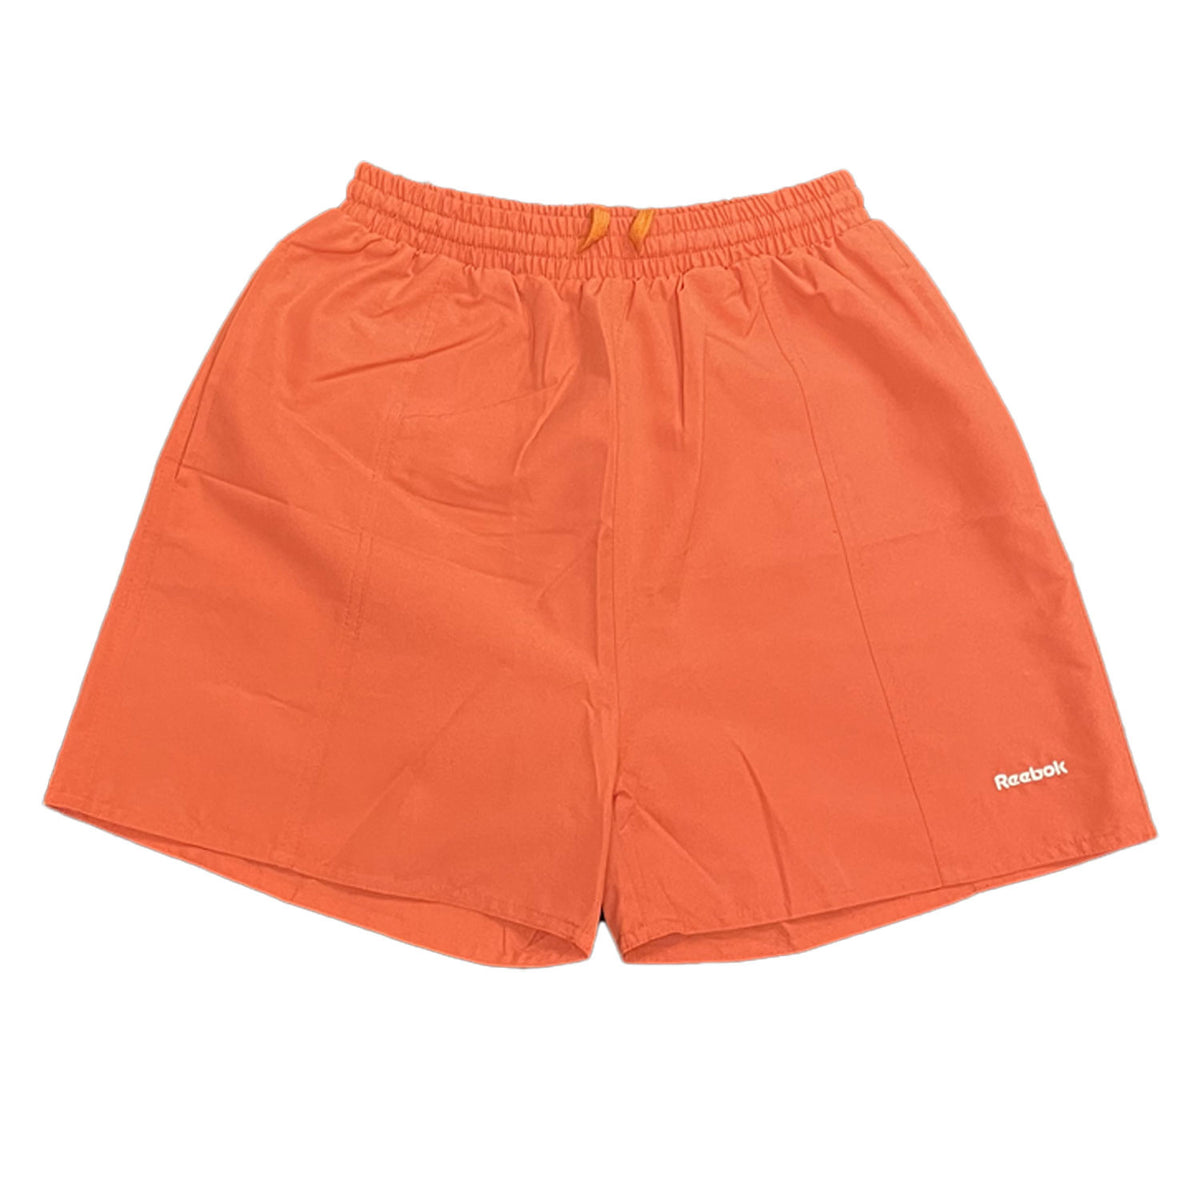 Reebok Womens Athletics Department Shorts - Orange - UK Size 12